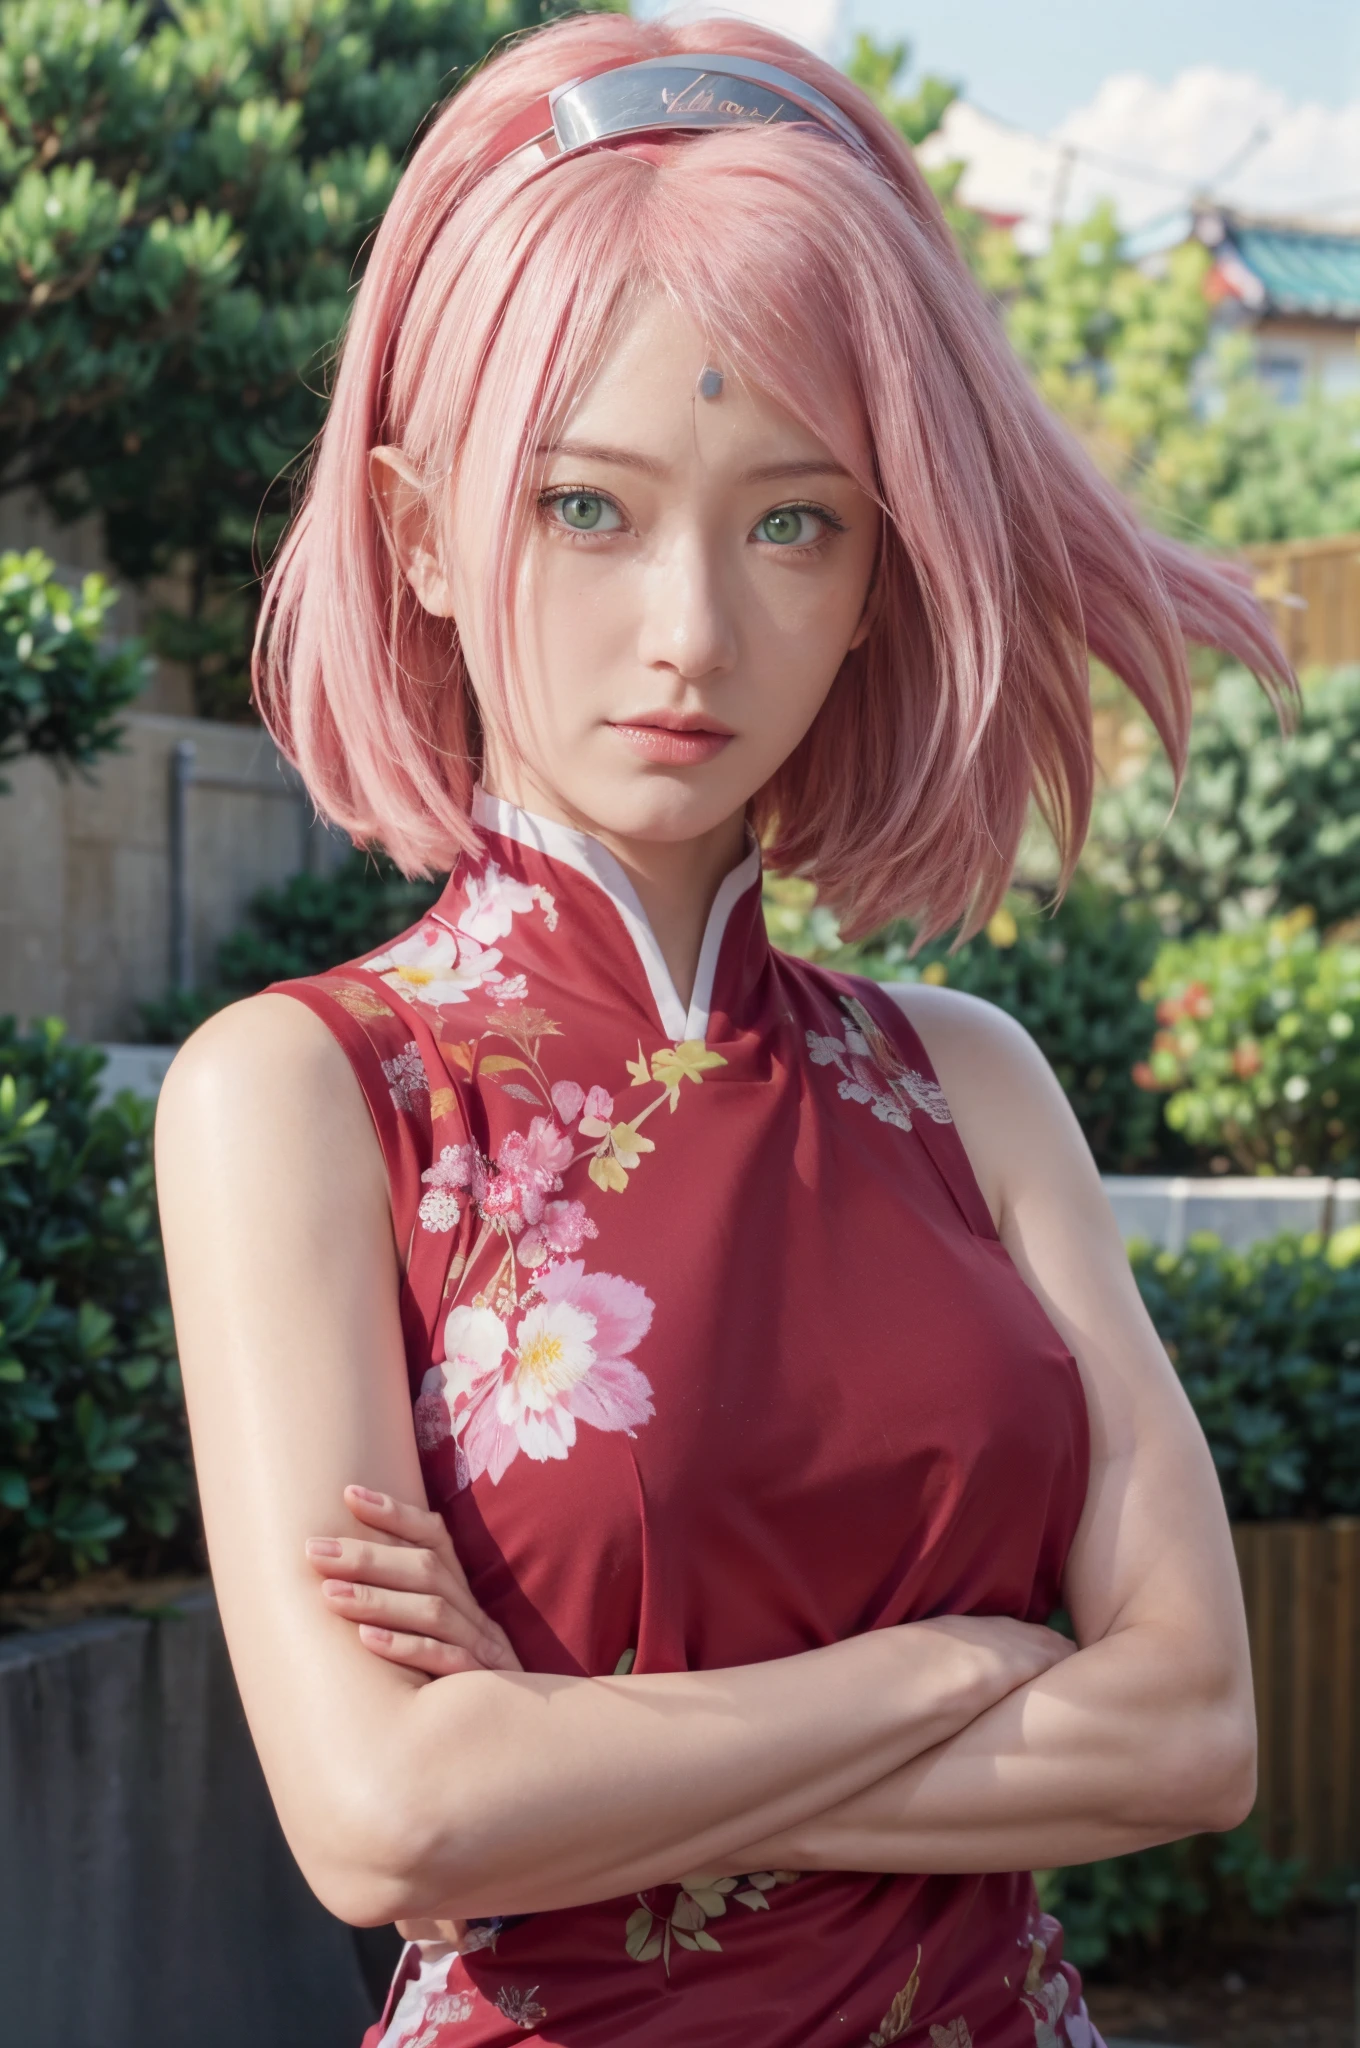 Reale Adaption dieser Figur,ihr Name Sakura Haruno aus dem Anime Naruto,Sie hat realistische rosa Haare und ein rotes Stirnband, realistisch gleiches Outfit, realistische gleiche Schürze, schönes koreanisches Gesicht, sie hat grüne Augenfarbe, Realistisches Licht, realistischer Schatten, Realismus, hyperrealistisch,(fotorealistisch:1.2), realistischer Hintergrund , Einzelheiten Augen,